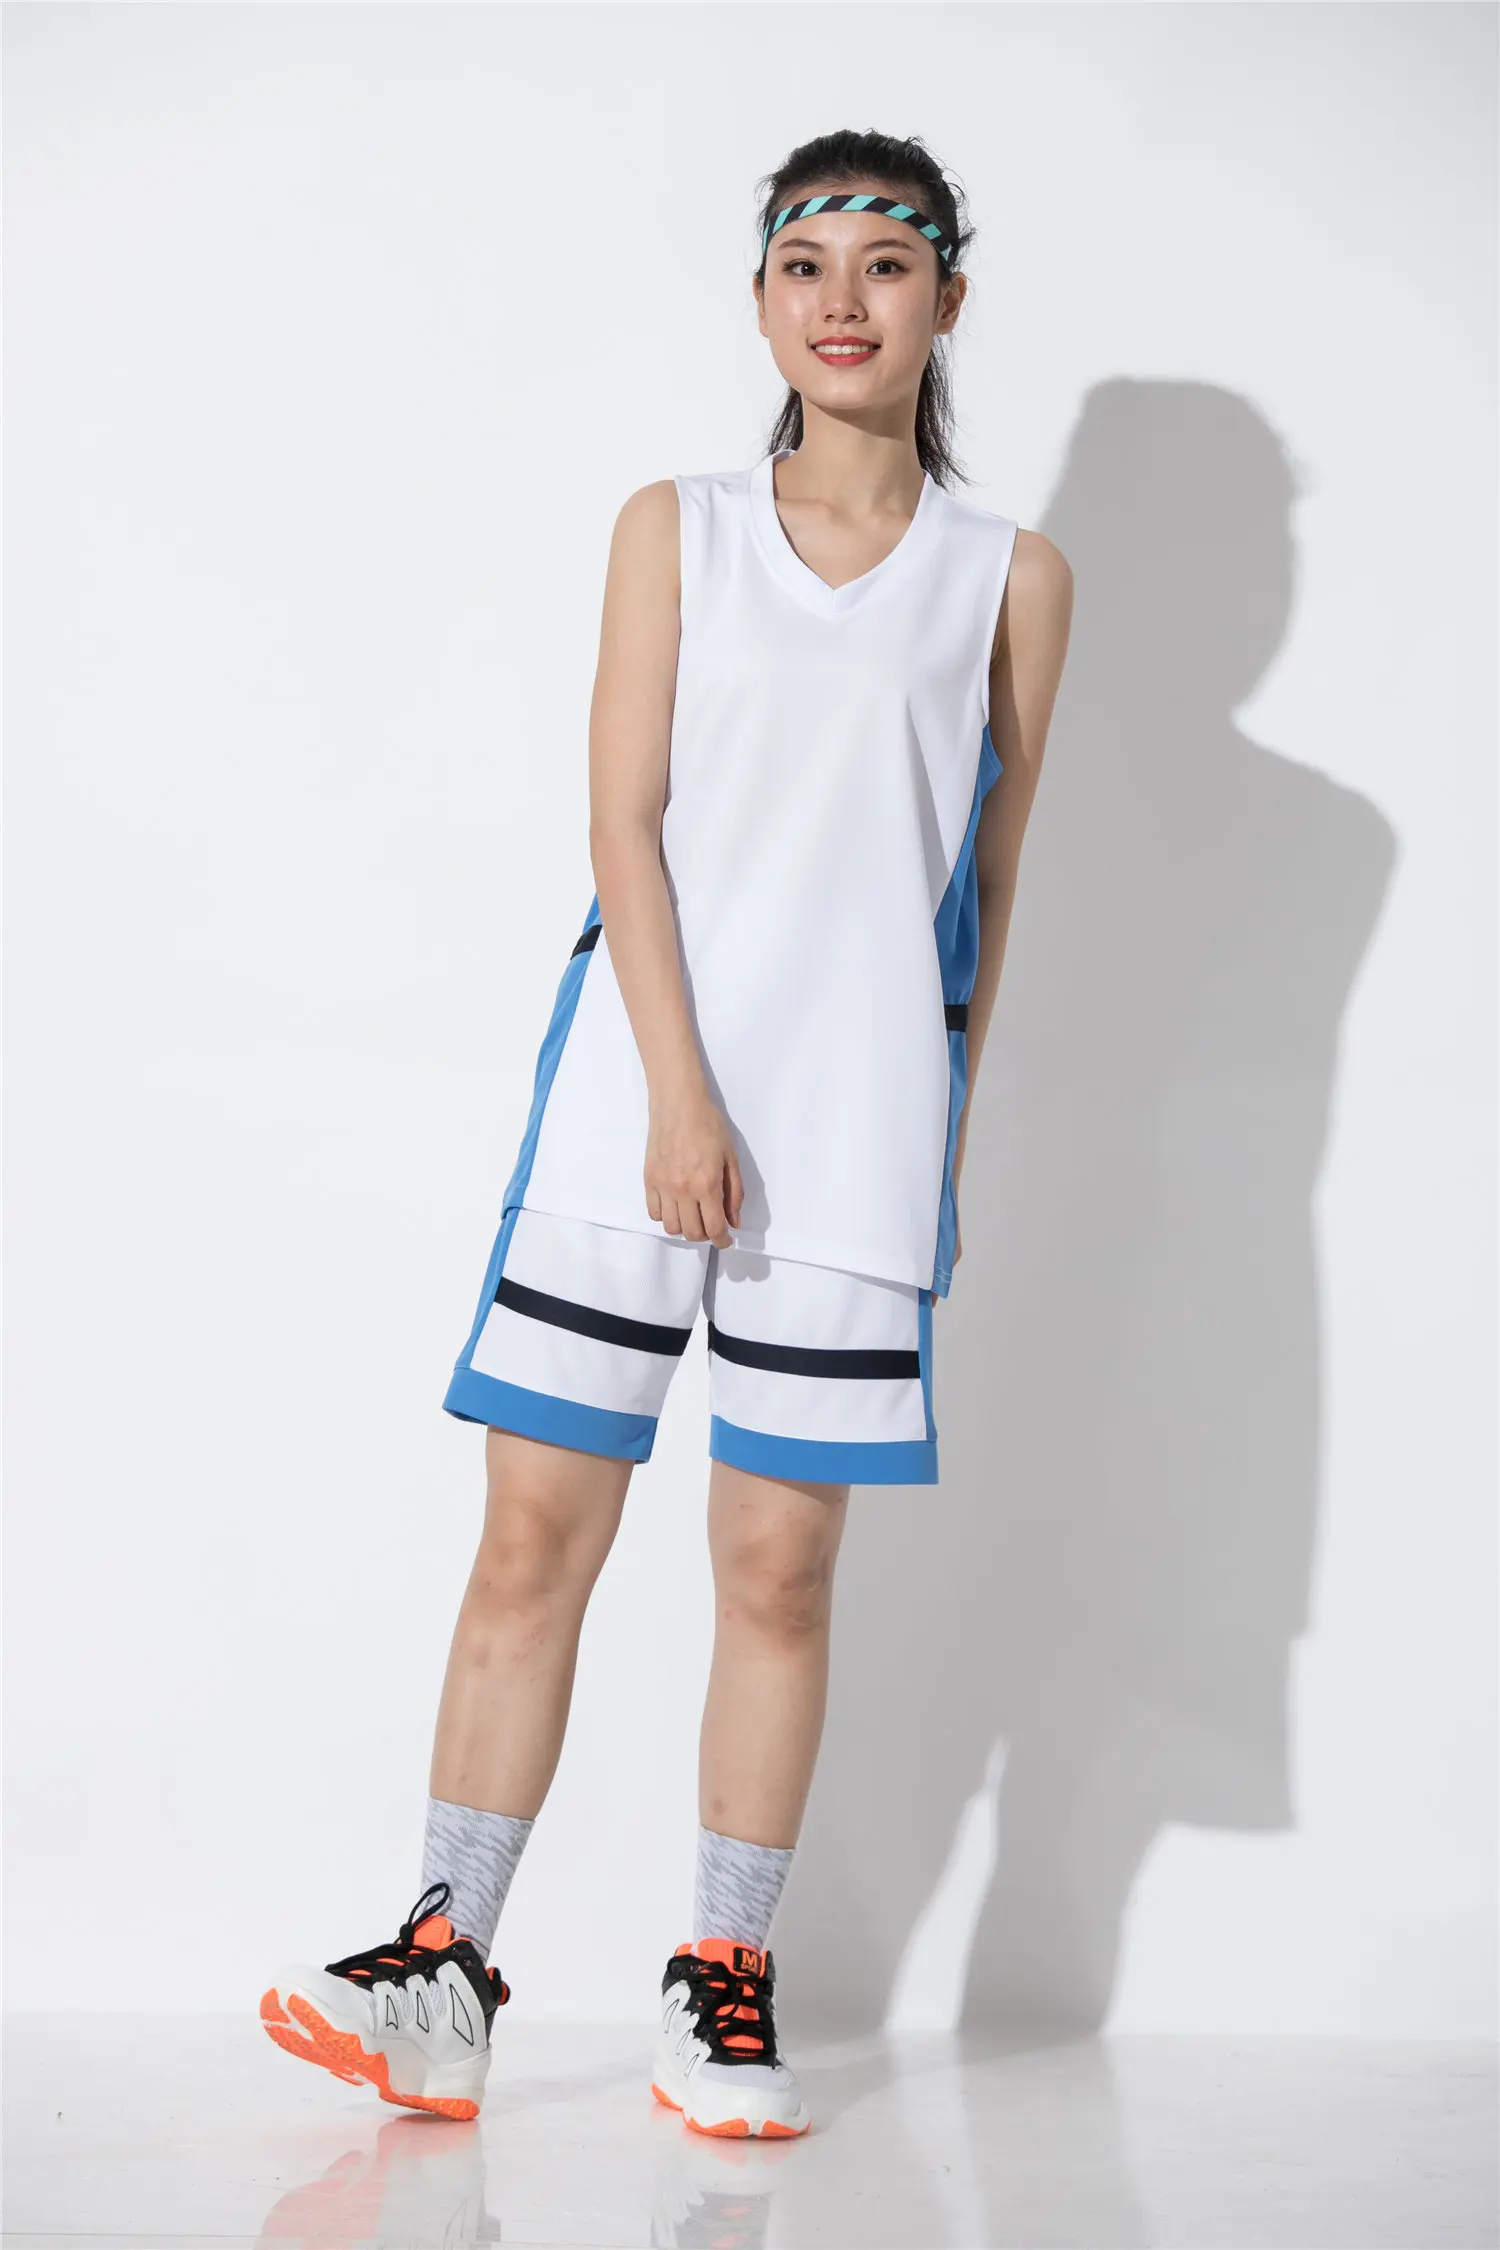 Баскетбольные майки для взрослых, спортивные комплекты, дышащие ткани, тренировочный простой дизайн, полиэстер эластичный против морщин, одежда для пар